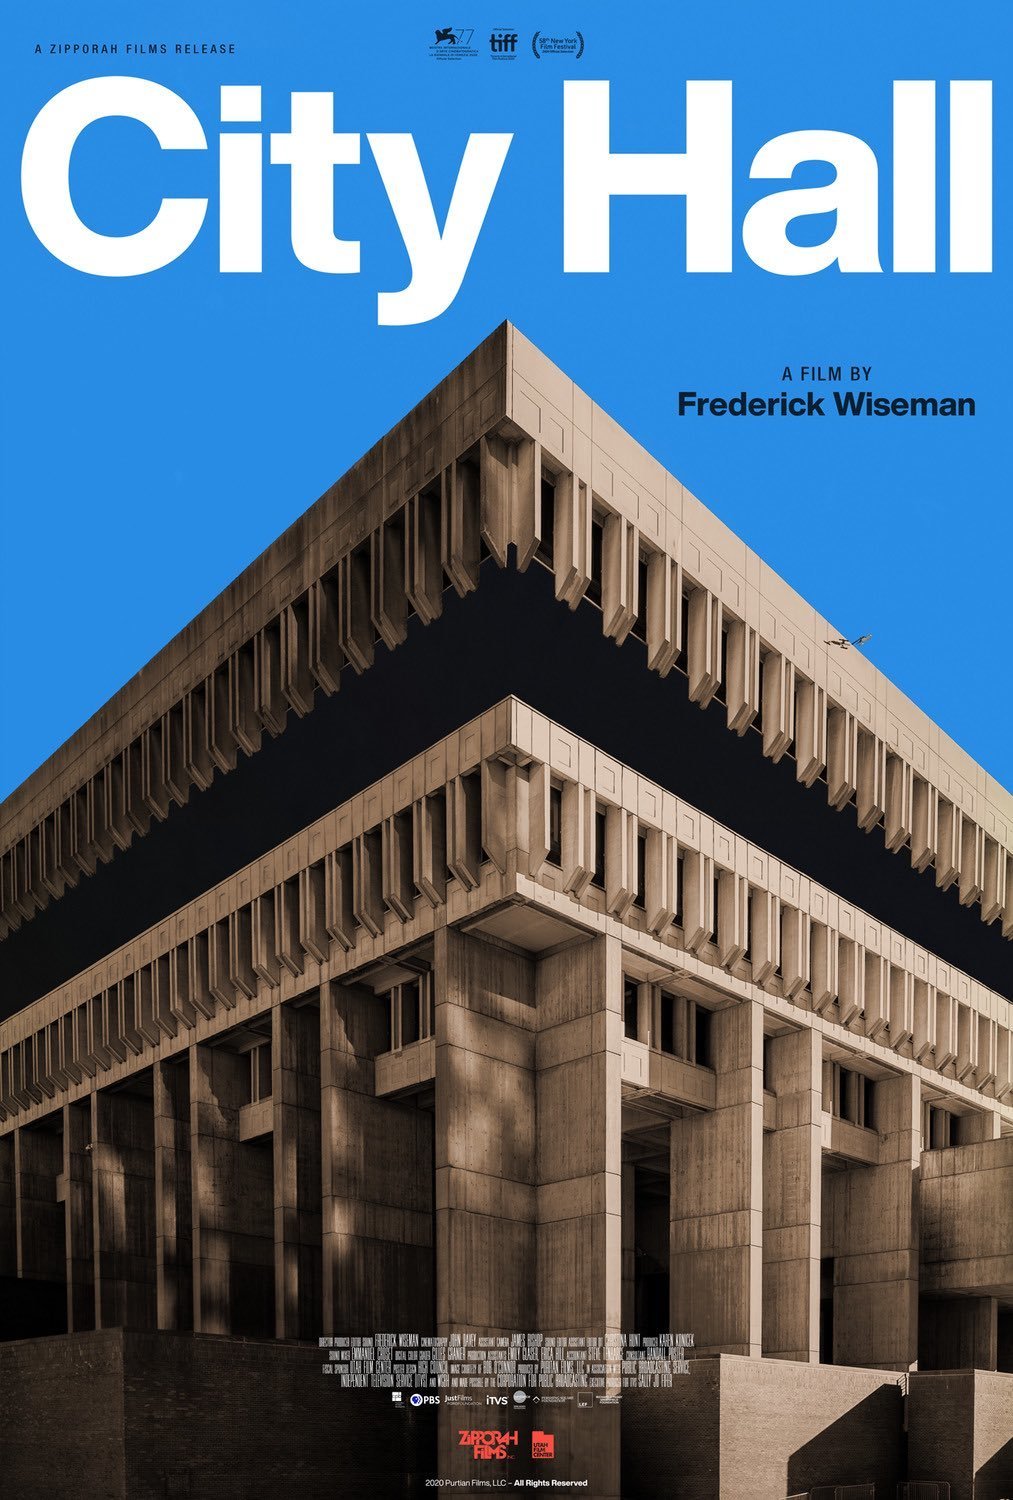 <p><strong>"City Hall" – Frederick Wiseman</strong></p><p>Frederick Wiseman imzalı "City Hall", Boston Belediye Binası’nı mercek altına alıyor. Dünya prömiyerini&nbsp; 77. Venedik Film Festivali’nde yapan belgesel, Boston Belediye Binası’nın insanlara sağladığı hizmet faaliyetlerini ve çabalarını inceliyor.</p>